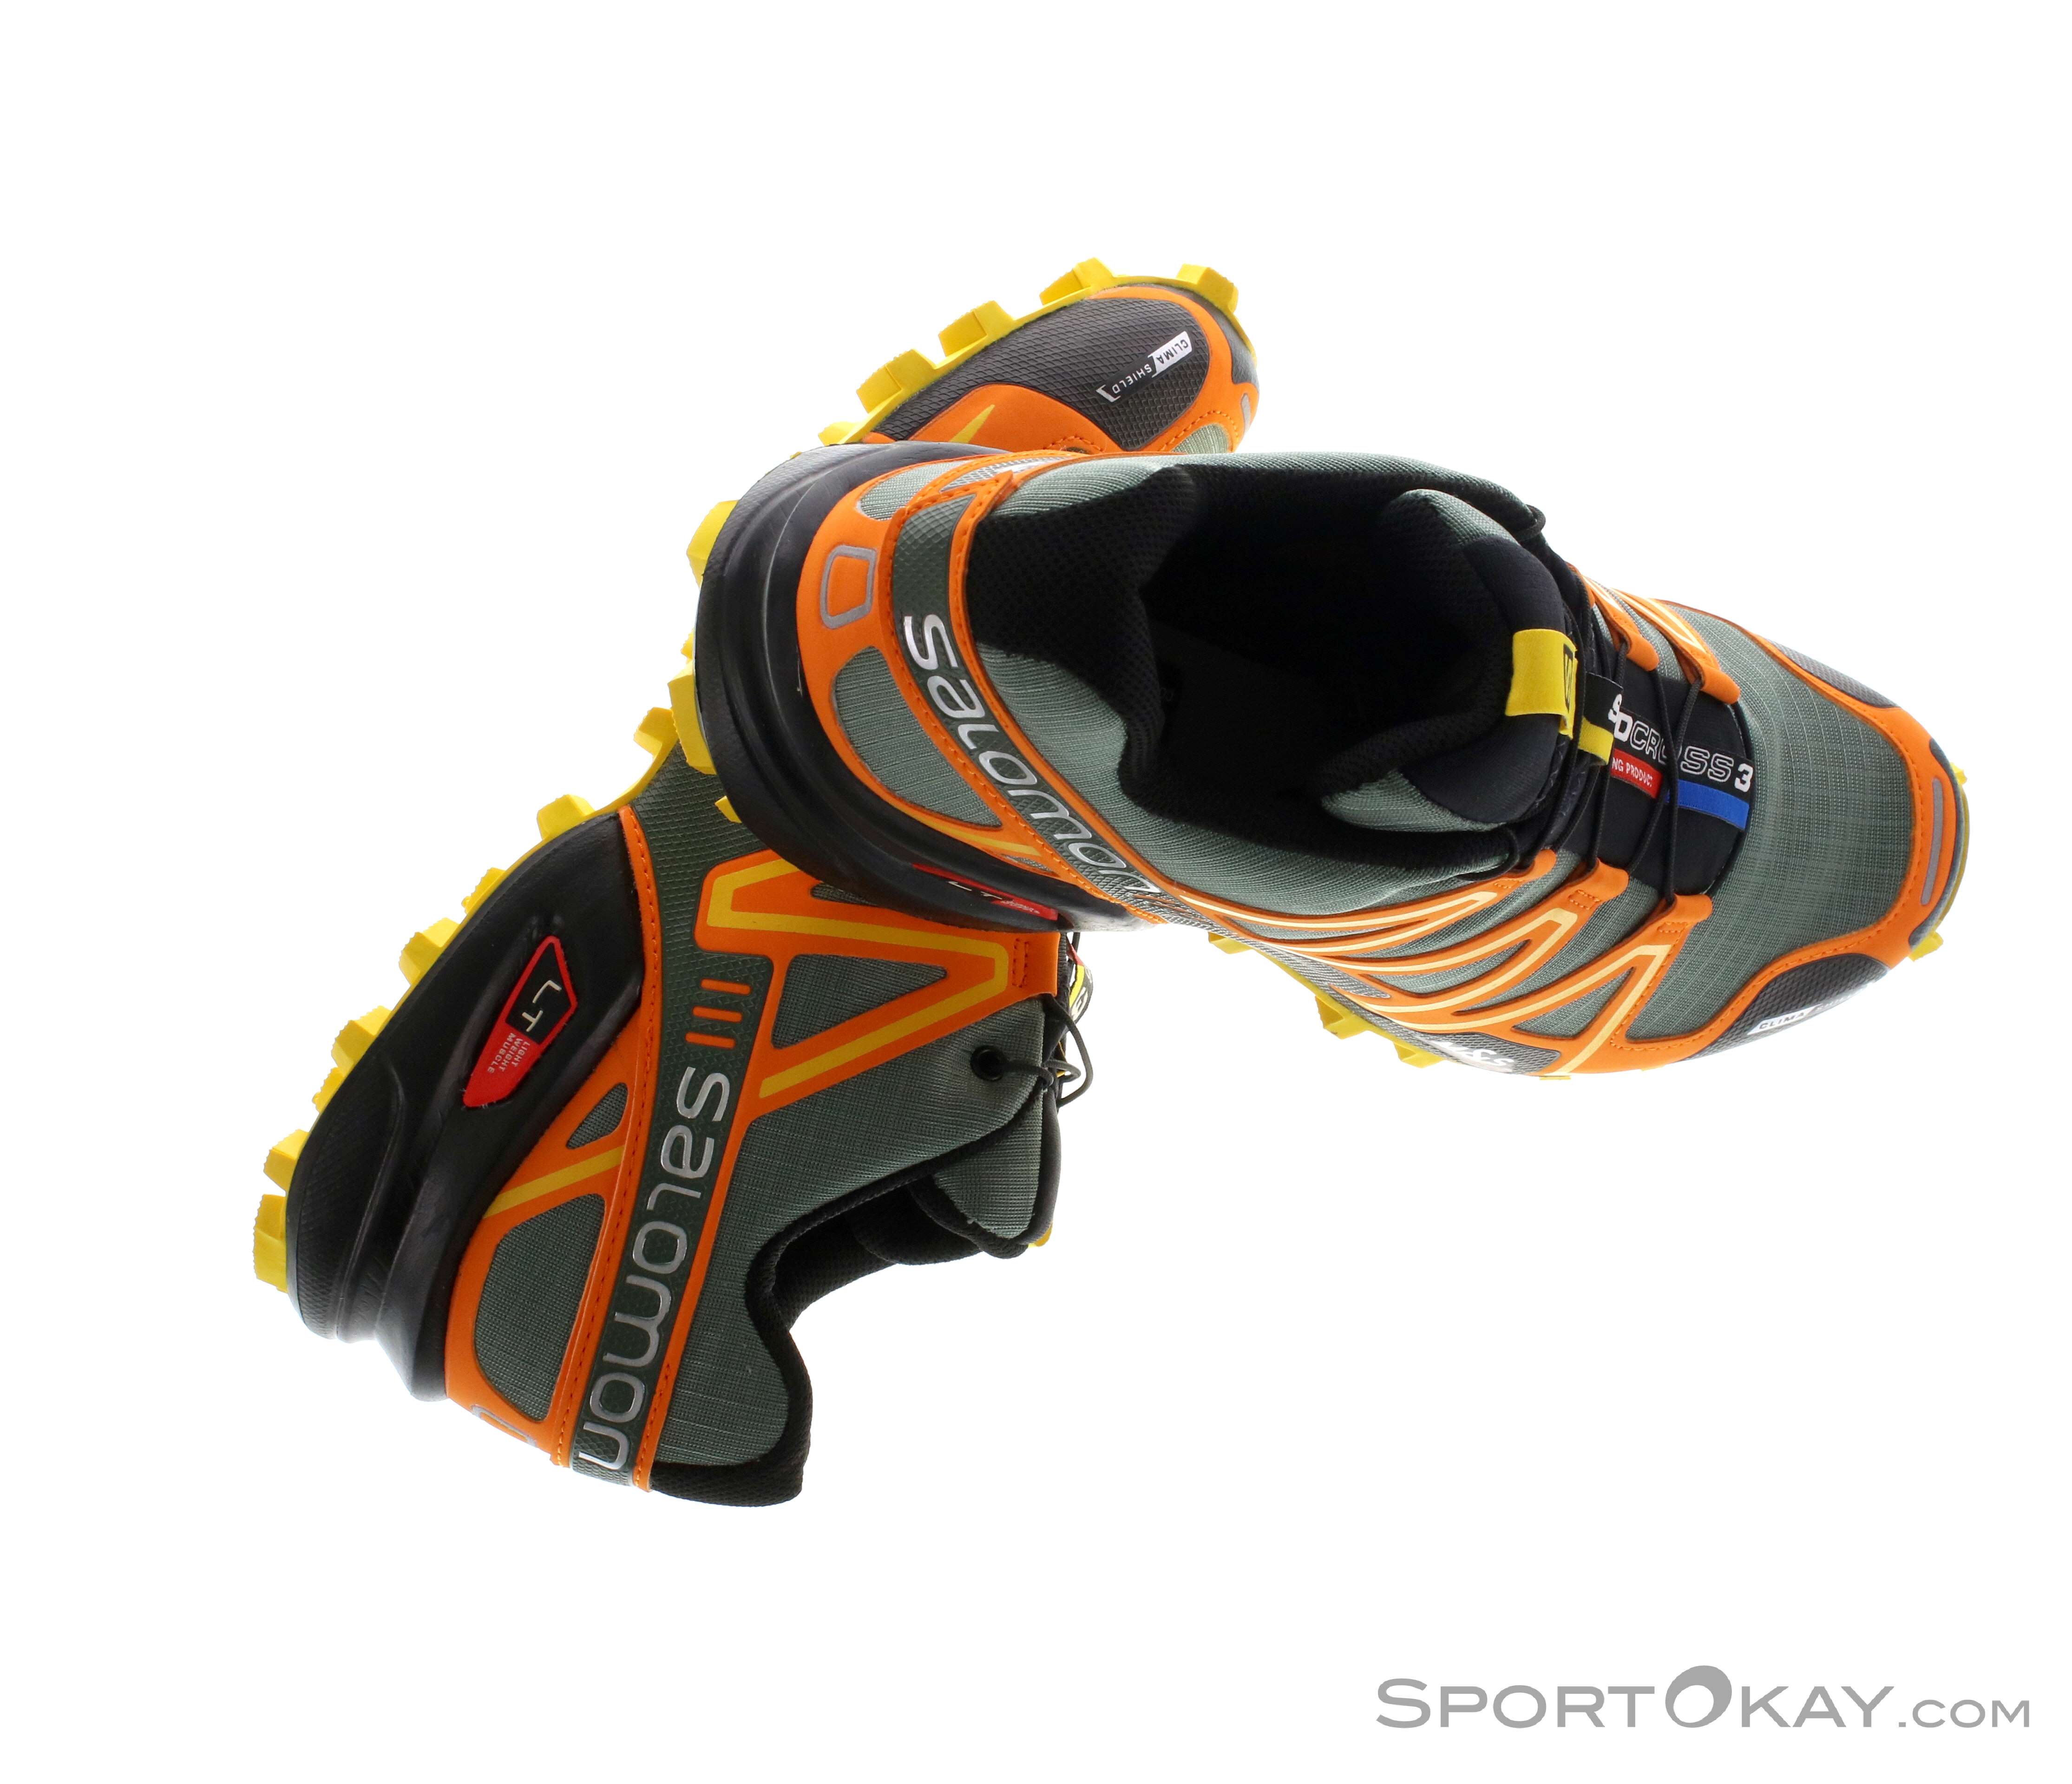 Salomon Speedcross 3 CS Herren Traillaufschuhe - Traillaufschuhe - Laufschuhe - Running Alle